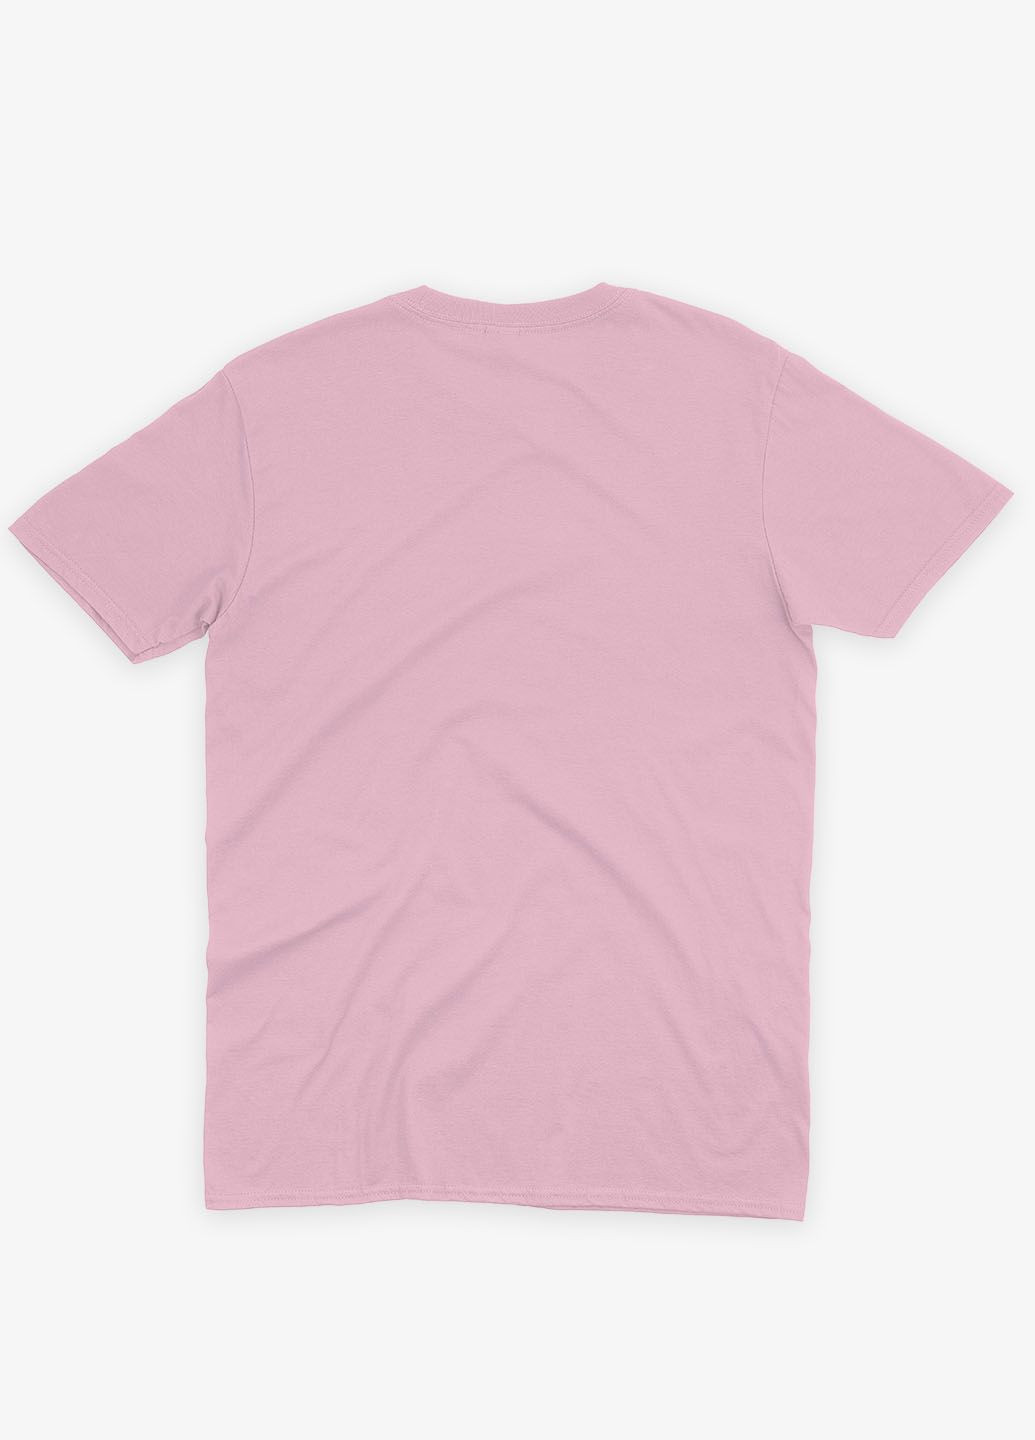 Светло-розовая демисезонная футболка для девочки с принтом супергероя - бэтмен 146-152 см бледно-розовый (ts001-1-lpinkj-006-003-020-g) Modno